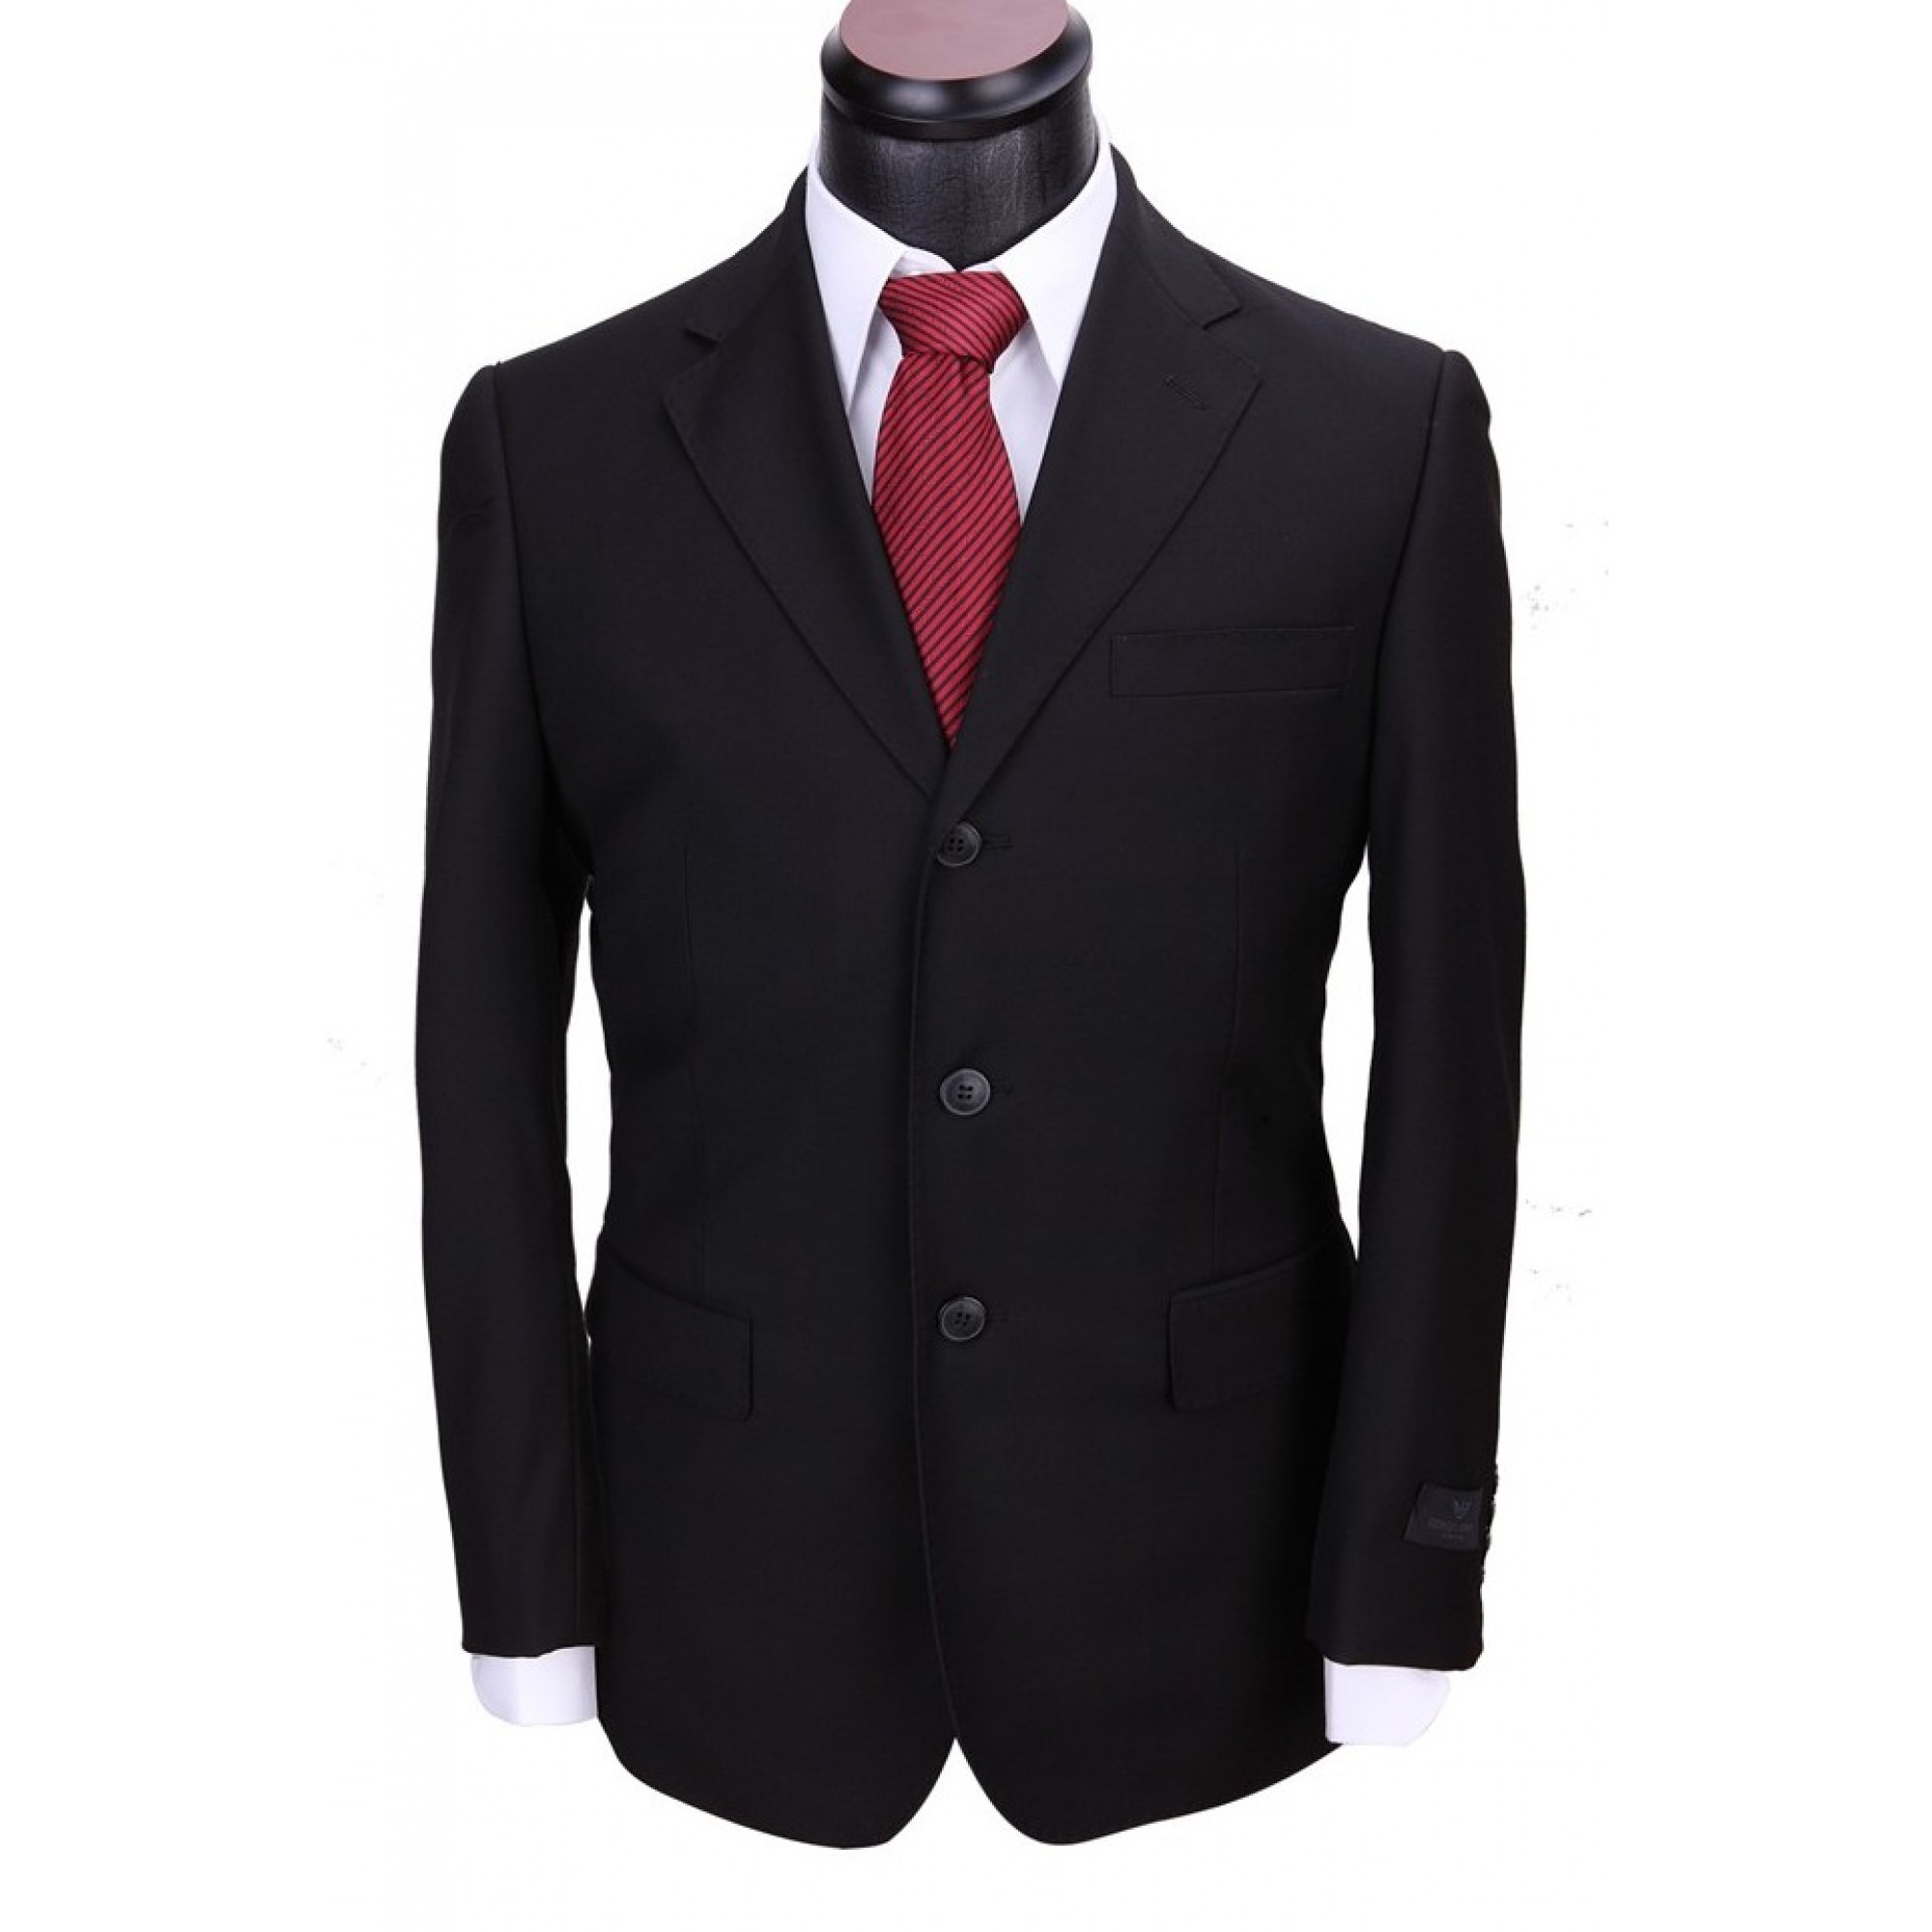 Продам мужской костюм. Костюм мужской. Классический костюм. Пиджак мужской черный классический. Мужской костюм с галстуком.